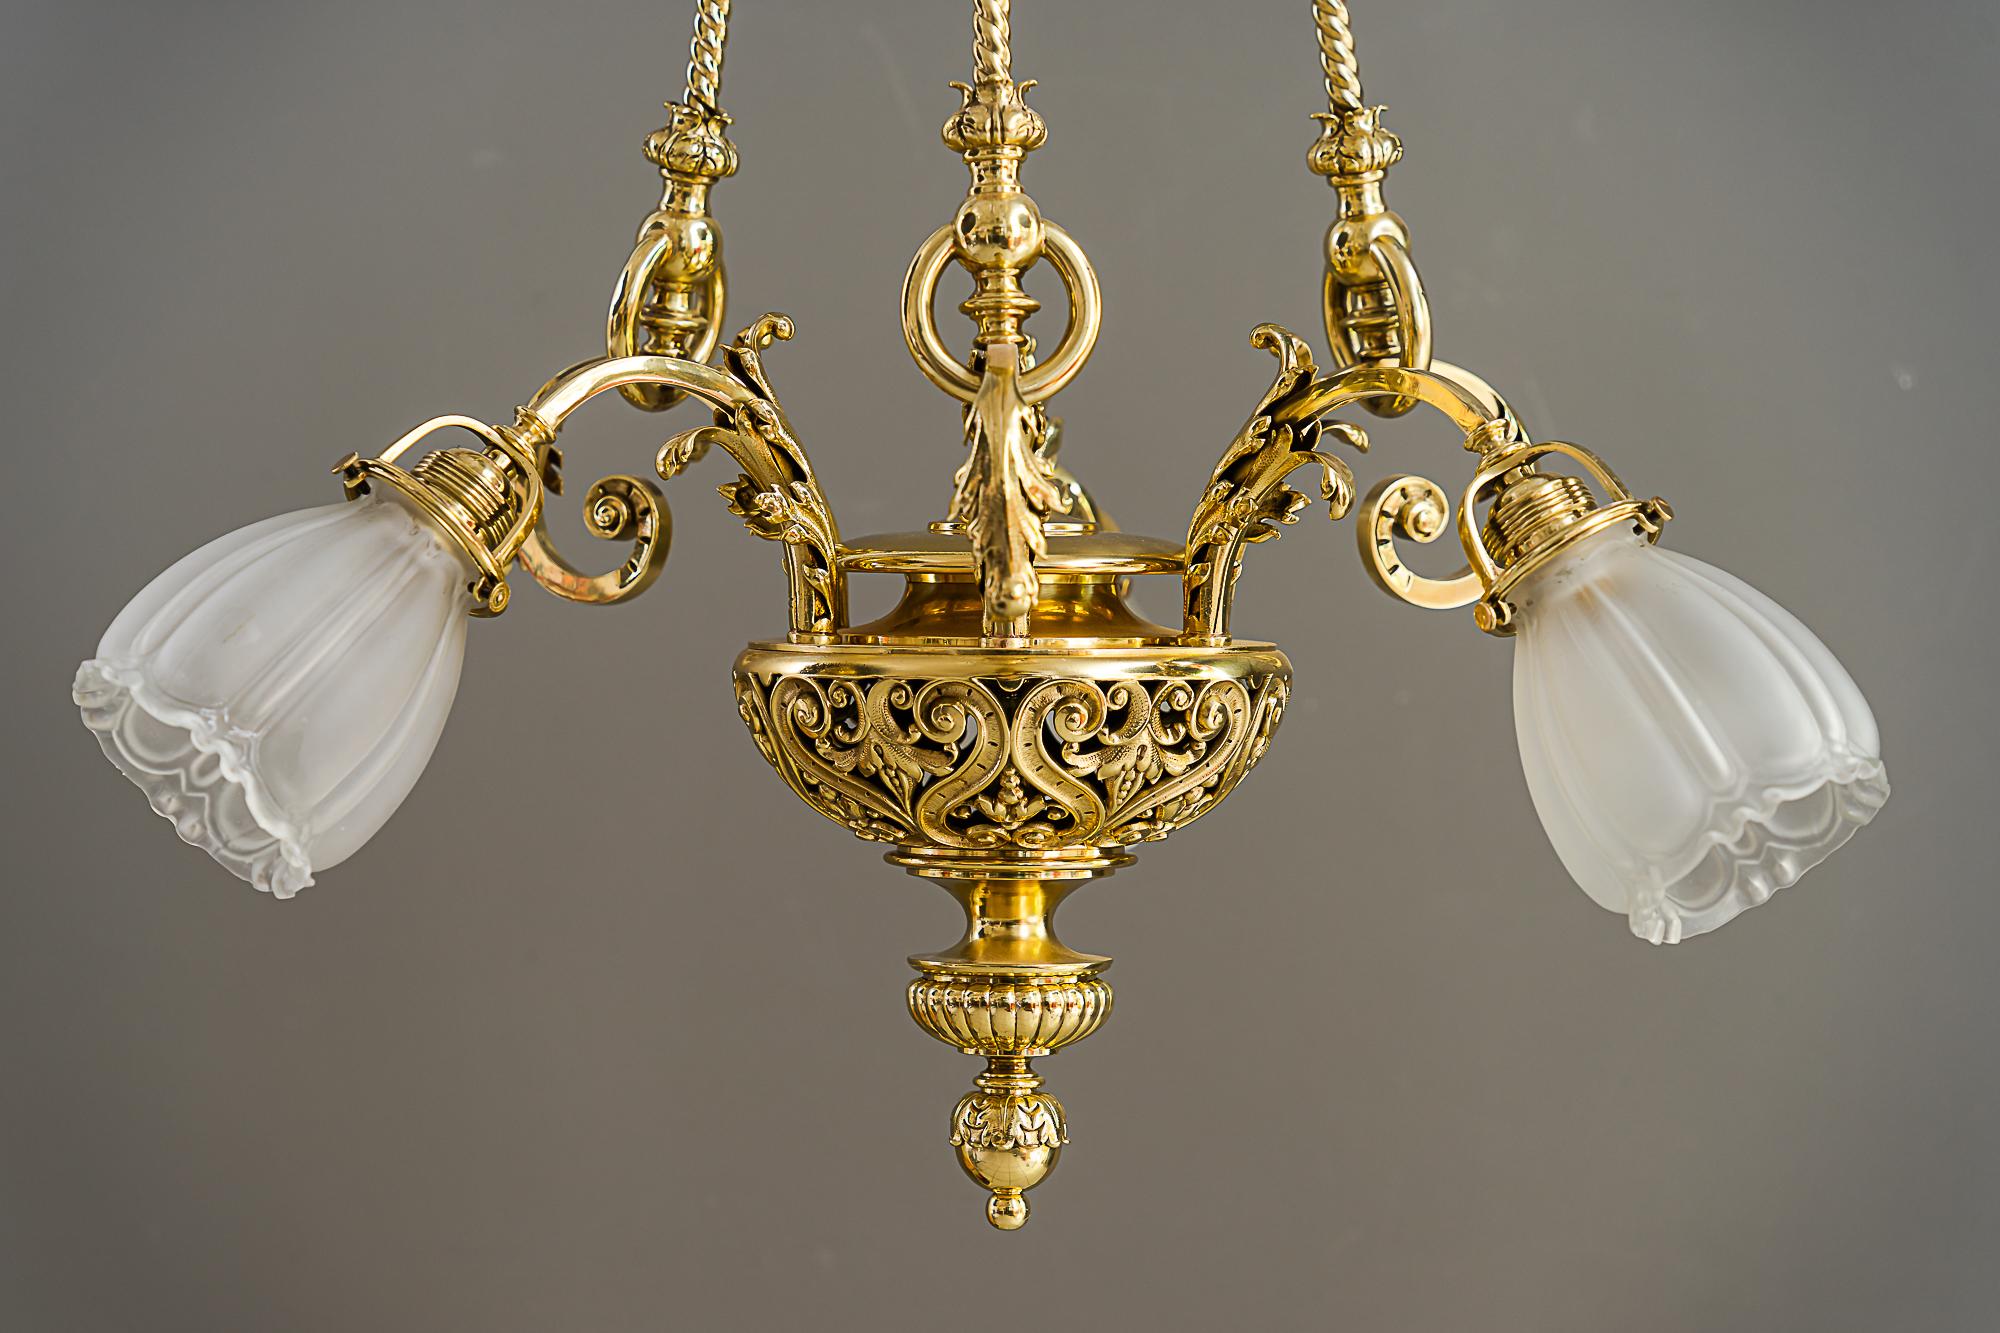 Austrian Historic chandelier vienna around 1890s with original antique glass shades For Sale